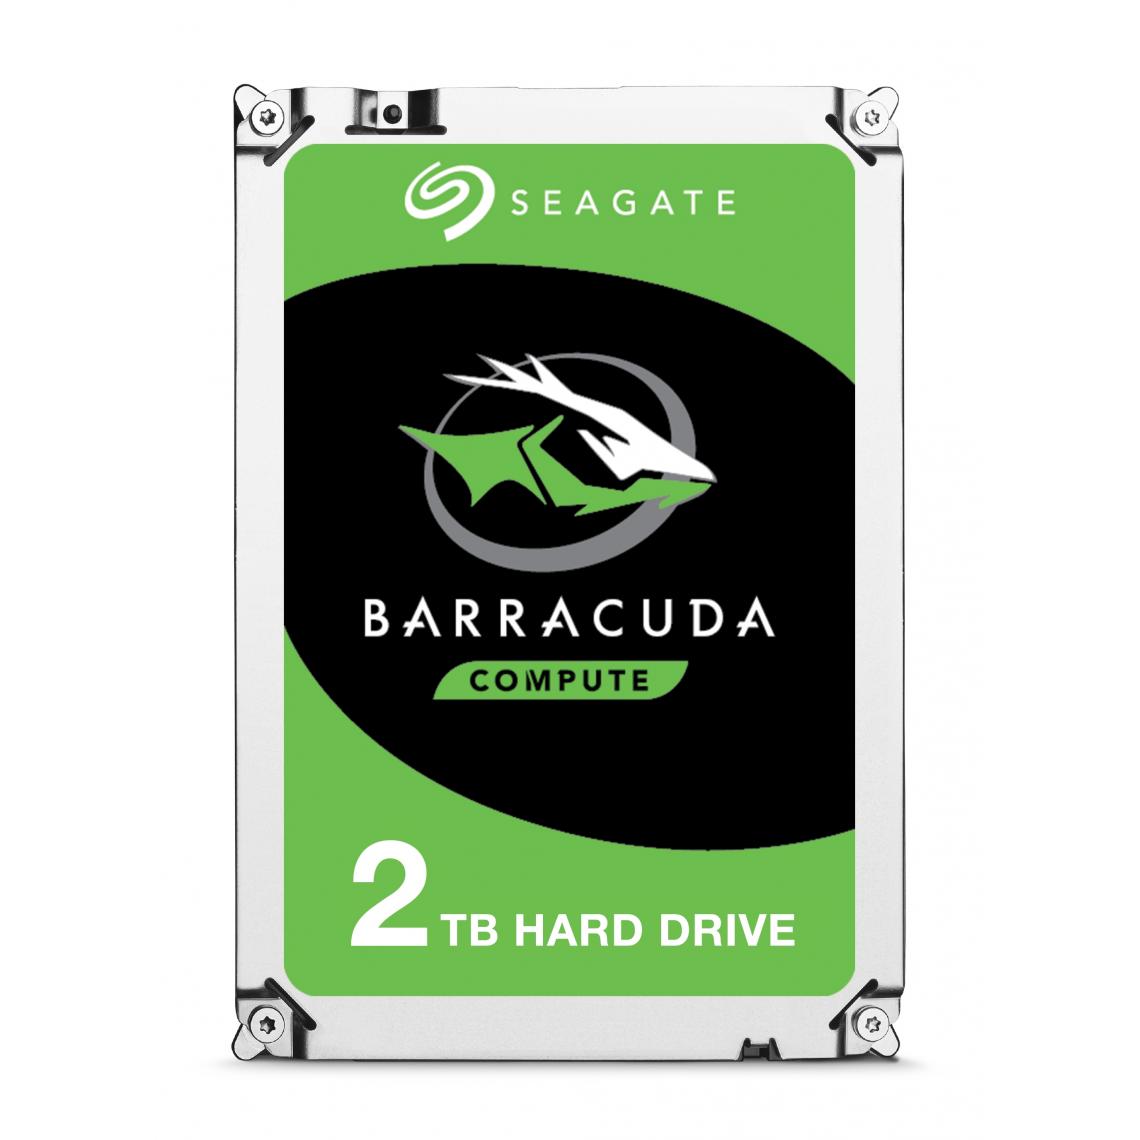 Seagate - Seagate Barracuda ST2000DM008 internal hard drive - Disque Dur interne